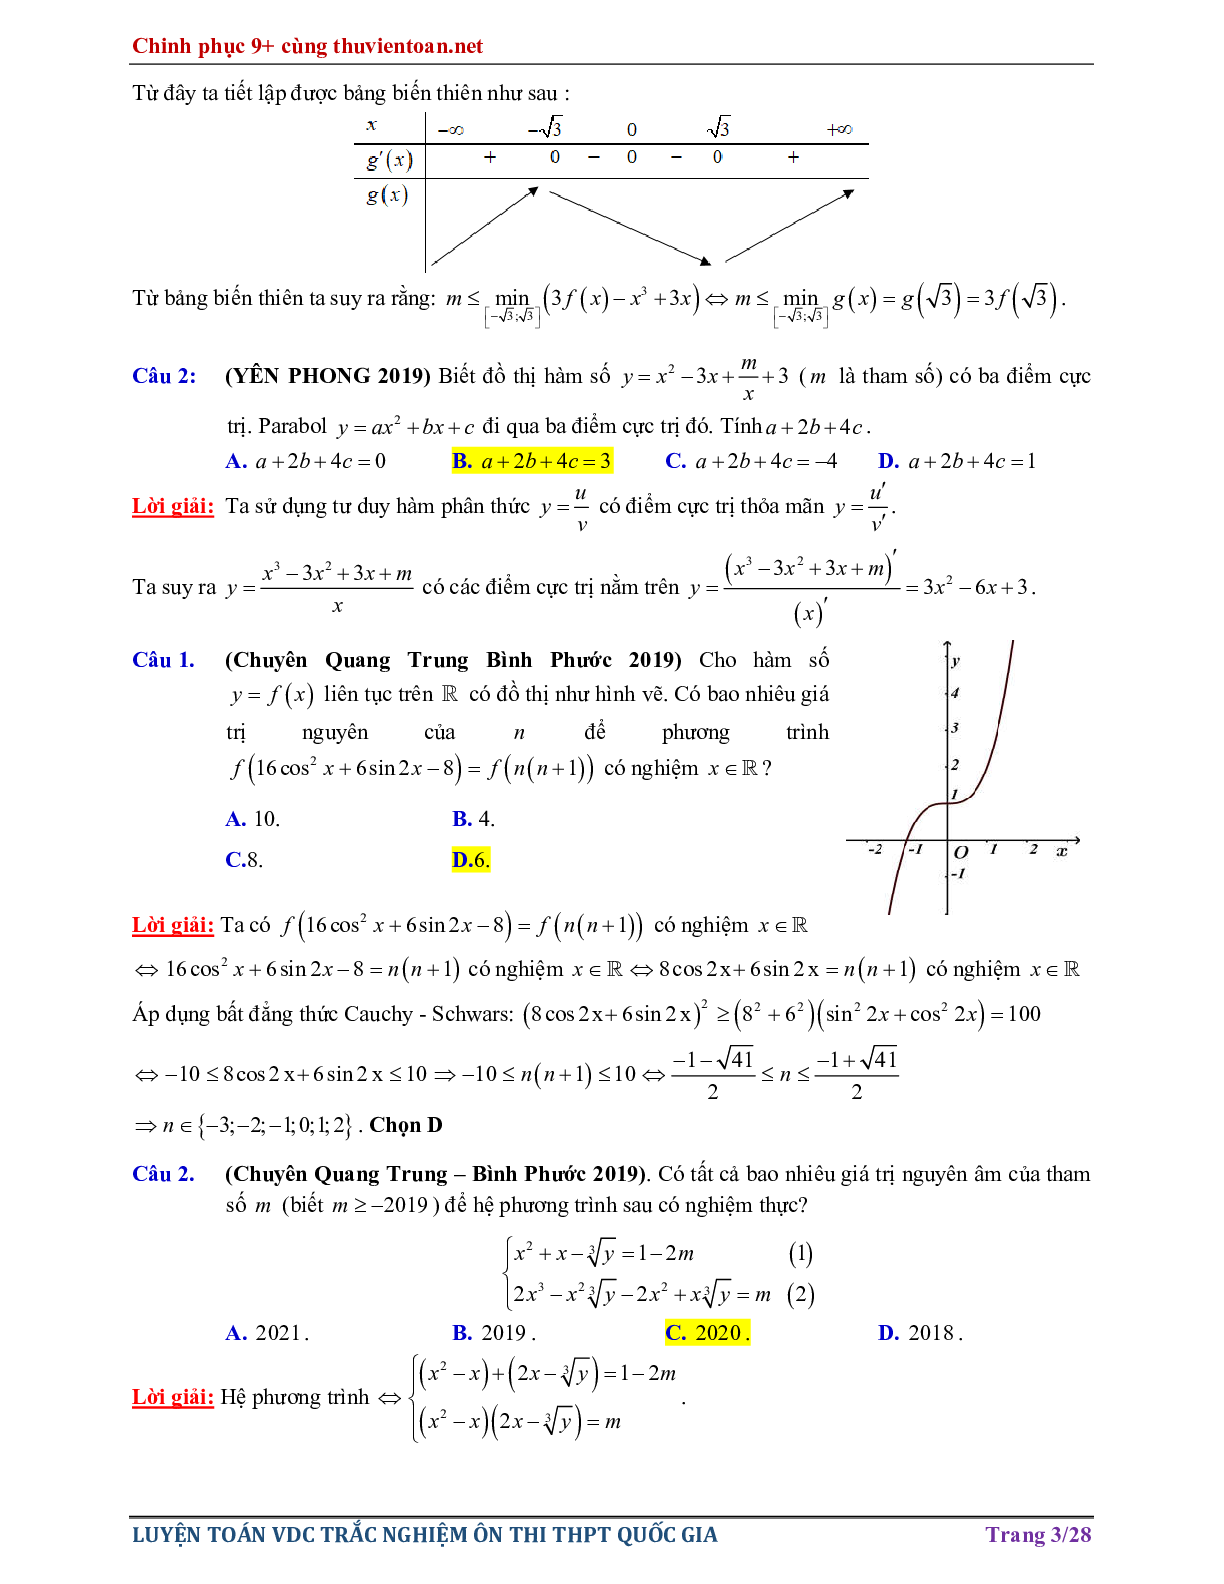 Bài tập Vận dụng cao - Nghiệm của phương trình hàm hợp ôn thi THPTQG năm 2021 (trang 3)